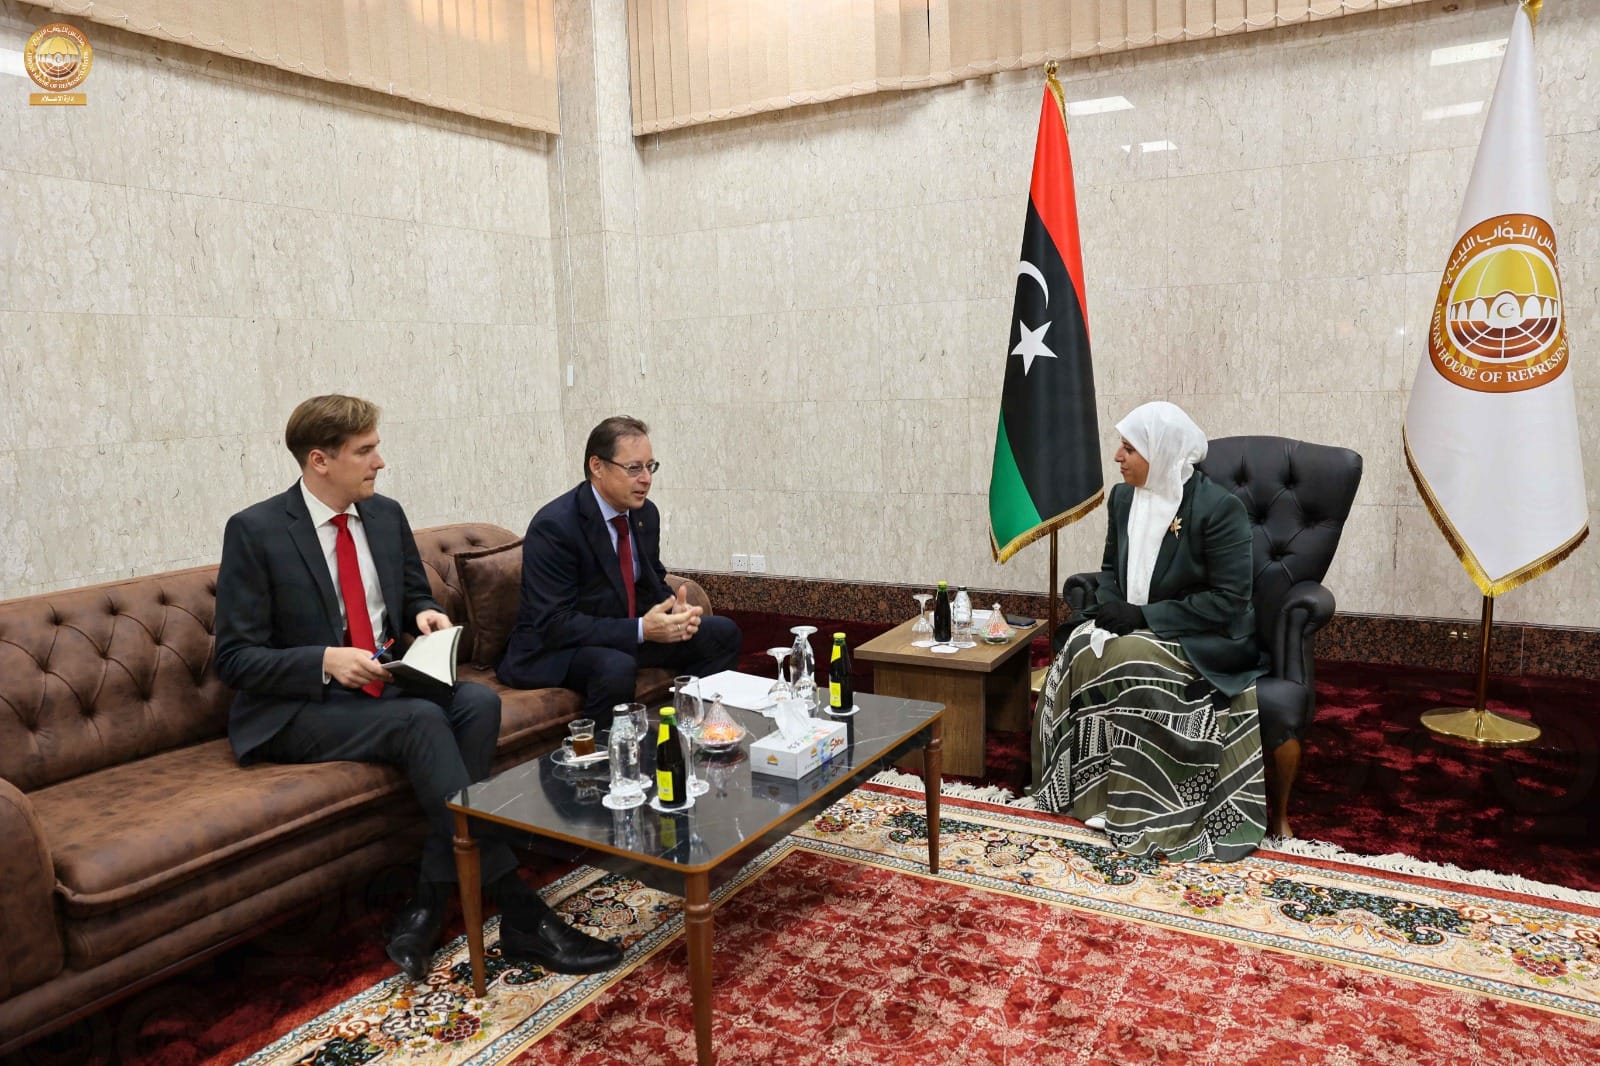 المسماري تبحث مع السفير الروسي دور القيادات السياسية الليبية في الدفع بالعلمية السياسية